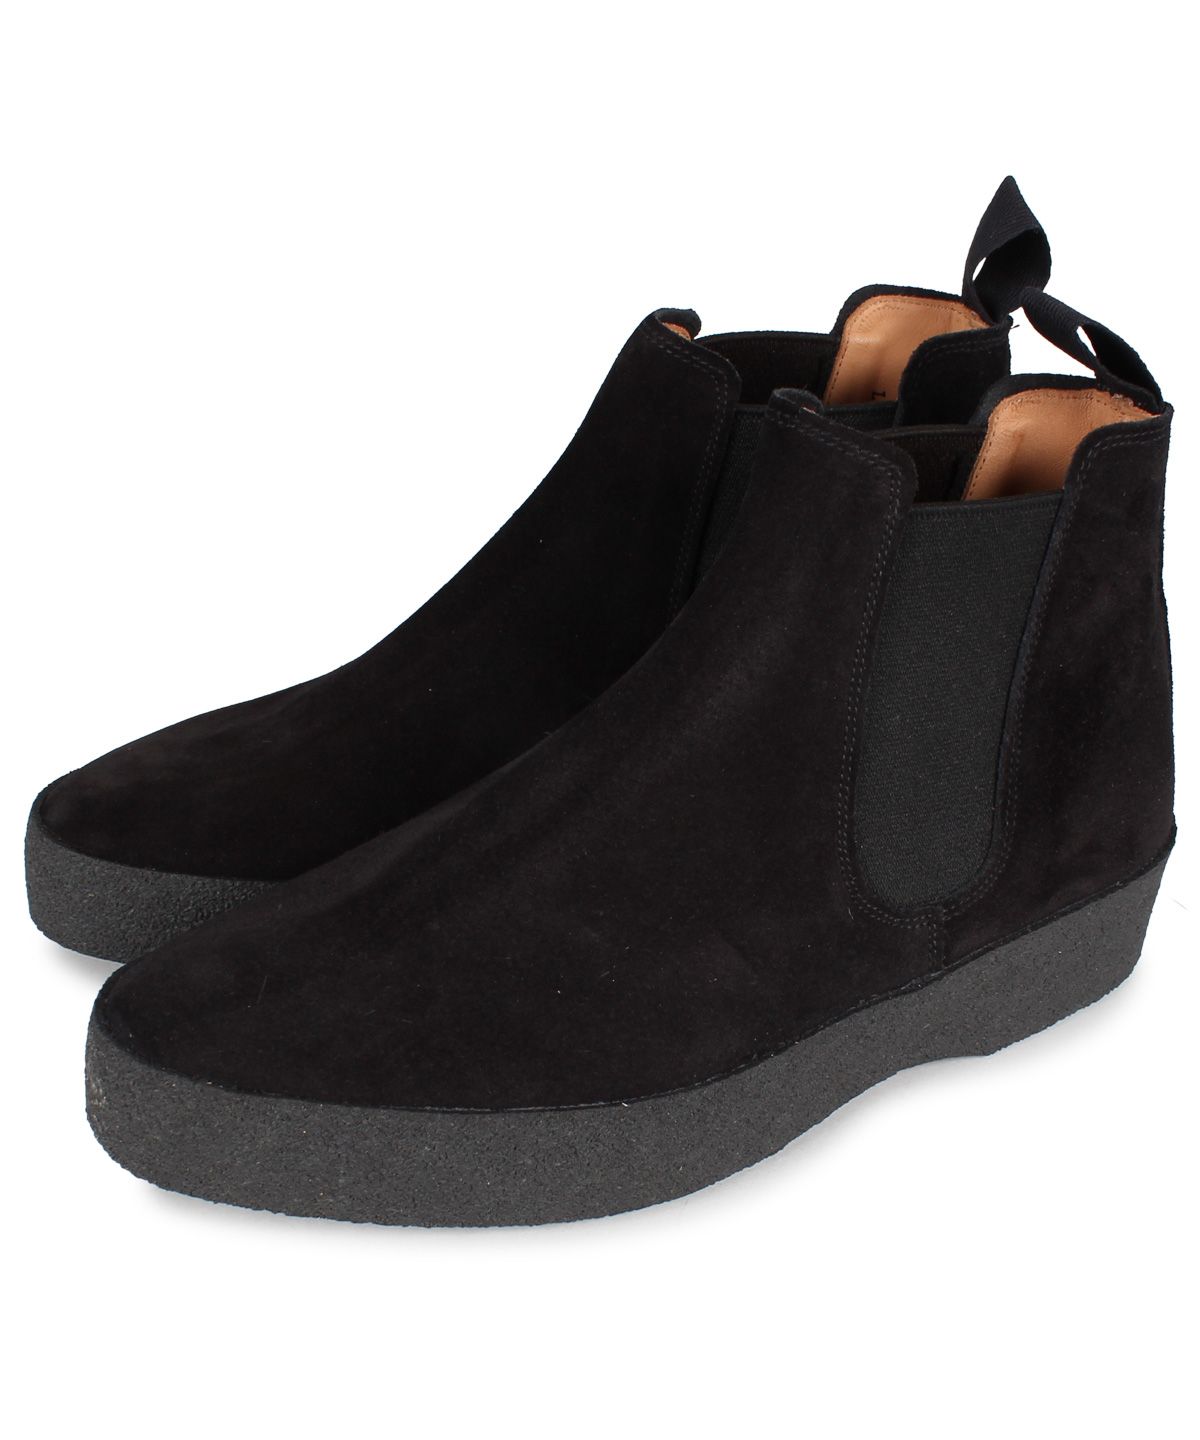 SANDERS サンダース チェルシー サイドゴアブーツ 靴 メンズ ビジネス ADAM CHELSEA BOOT Fワイズ ブラック 黒 1701BS